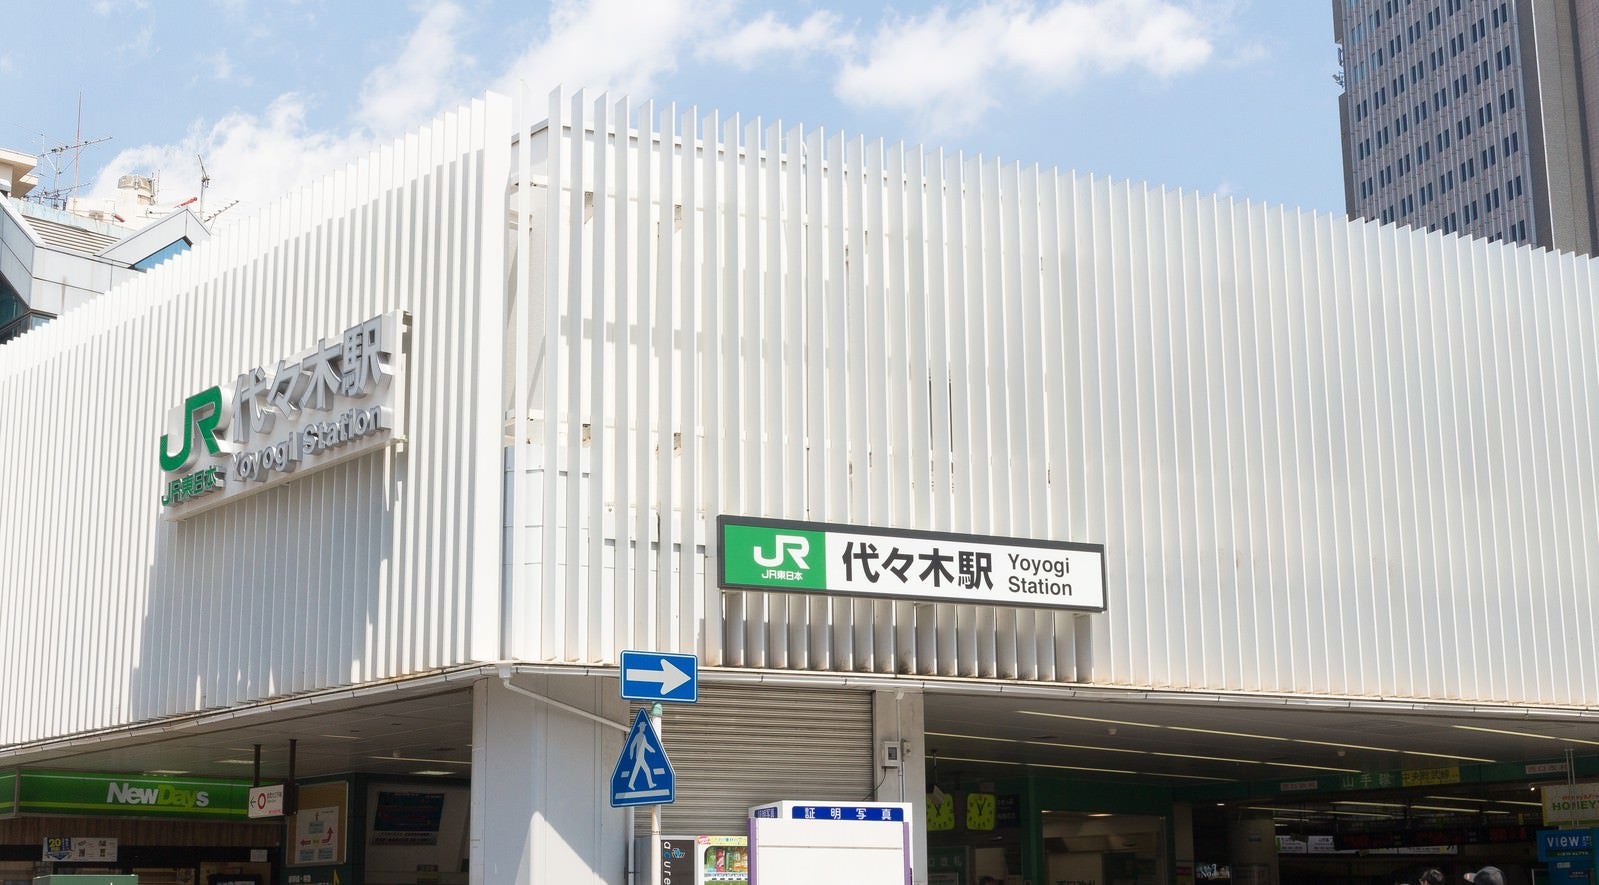 「JR代々木駅前」の写真